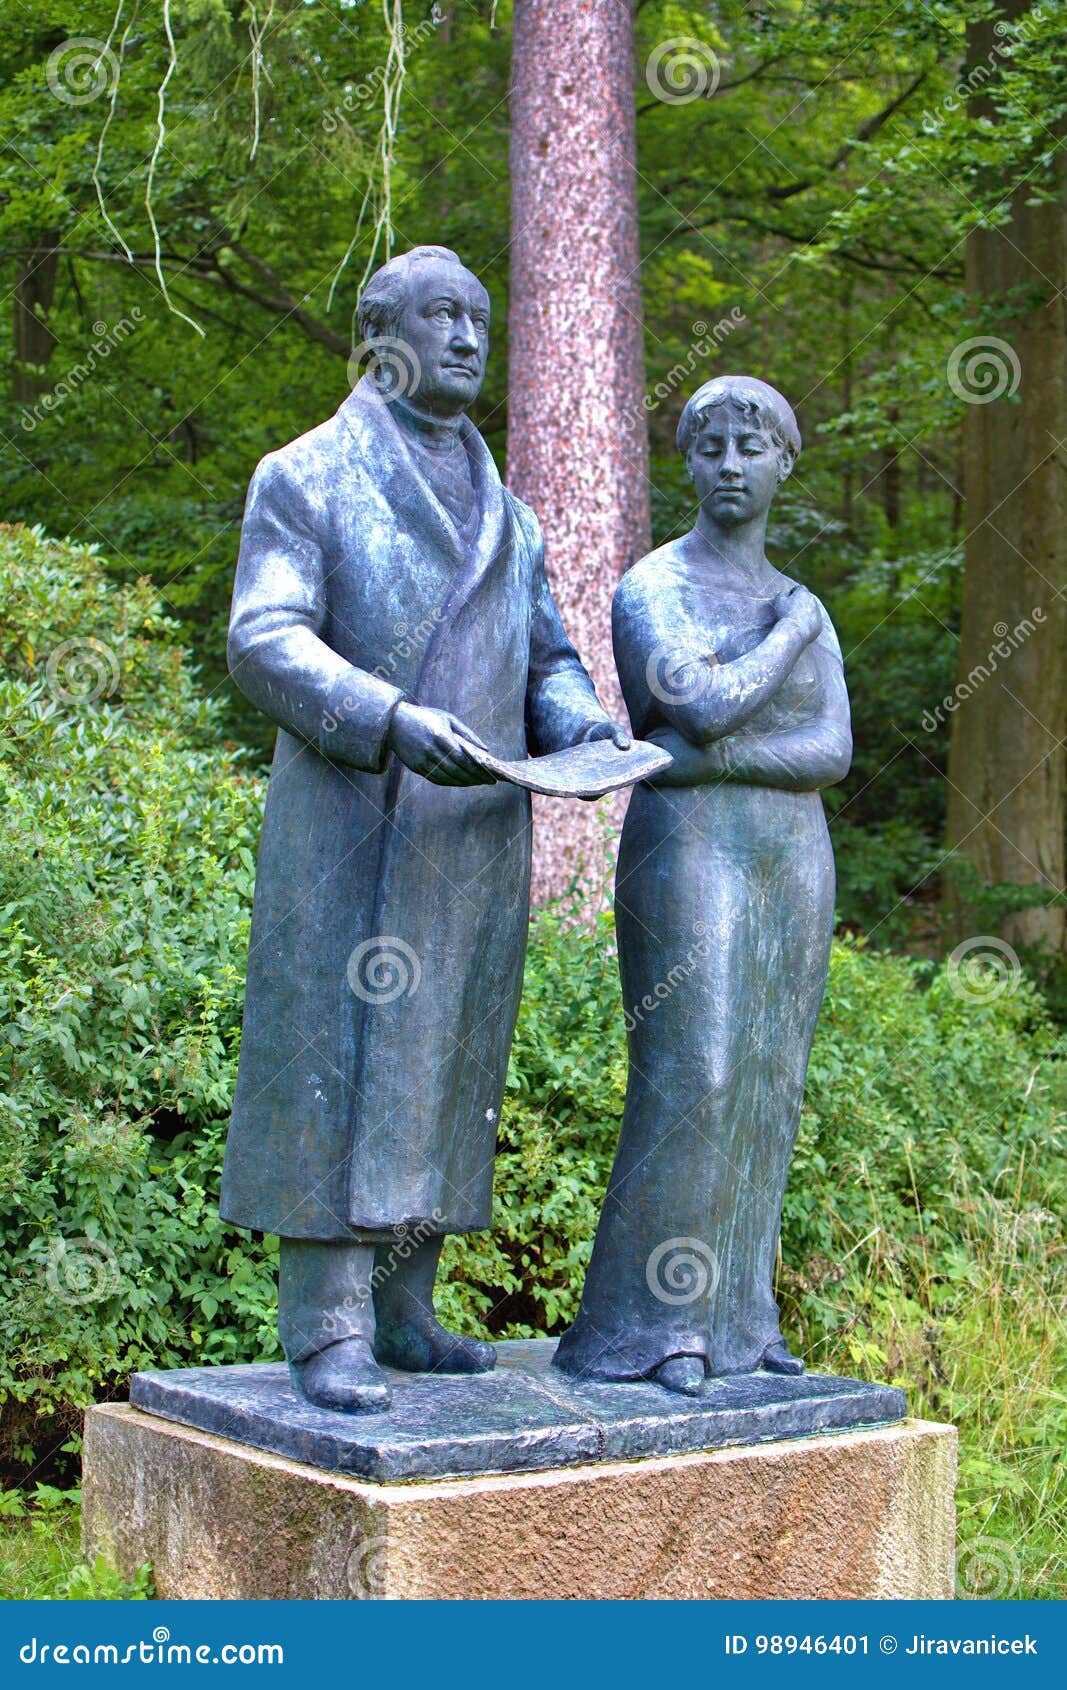 Goethe und sein Muse Ulrike - Kurpark in Marianske Lazne Marienbad - Tschechische Republik. Goethe und Muse - Skulptur durch deutschen Bildhauer Heindrich Drake befindet sich nahe dem Pavillon des Waldfrühlinges - Marianske Lazne Marienbad - Tschechische Republik